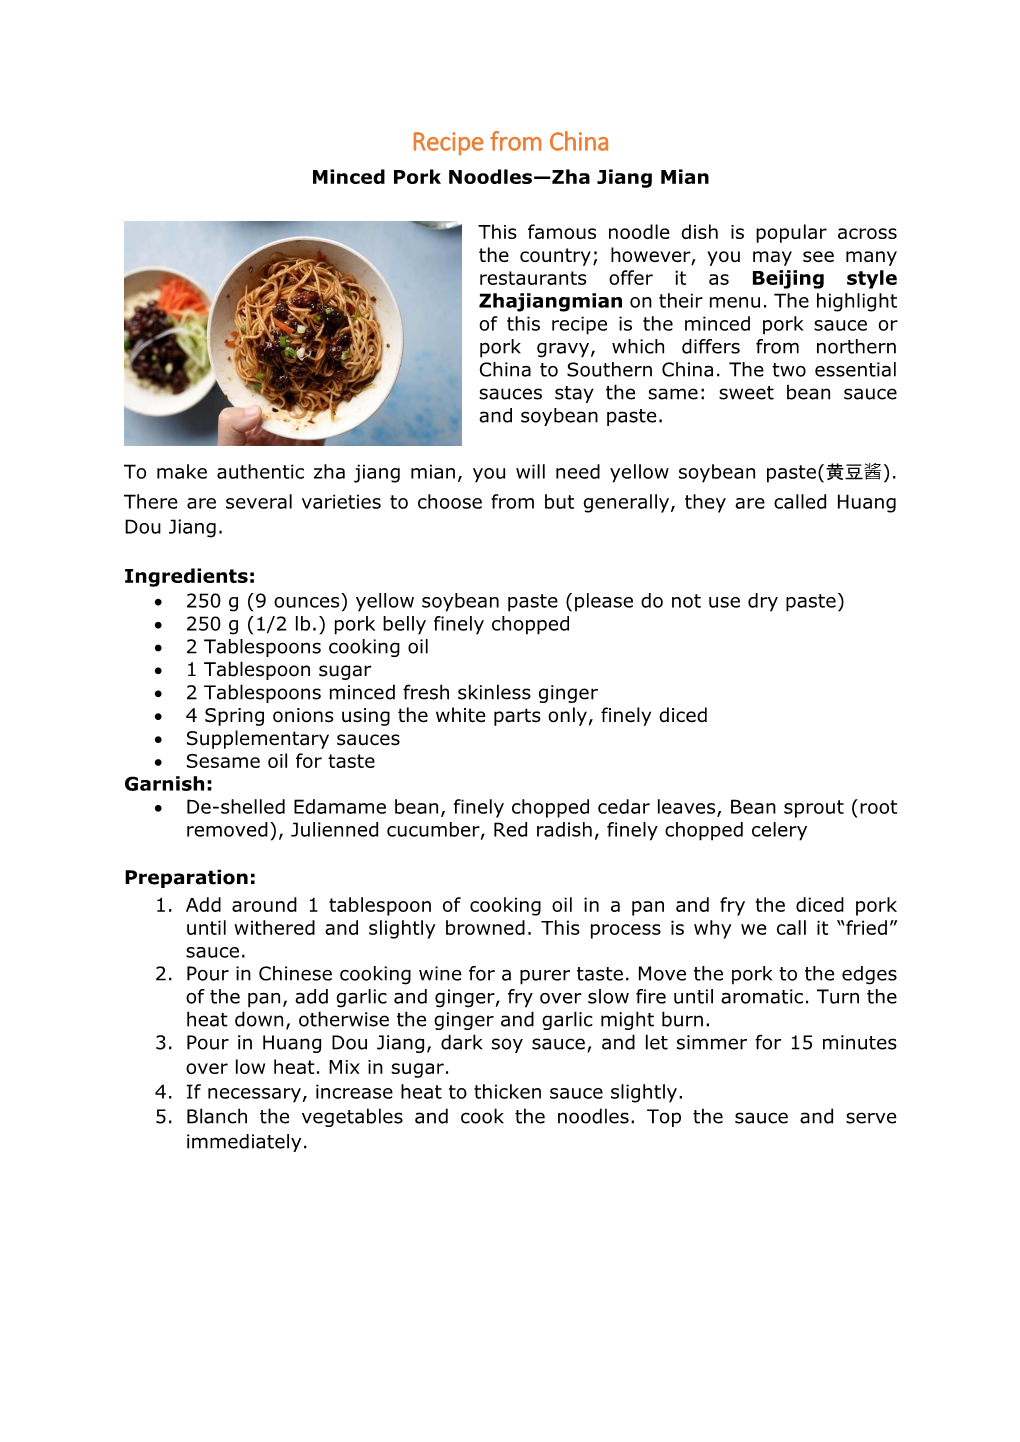 Recipe from China Minced Pork Noodles—Zha Jiang Mian